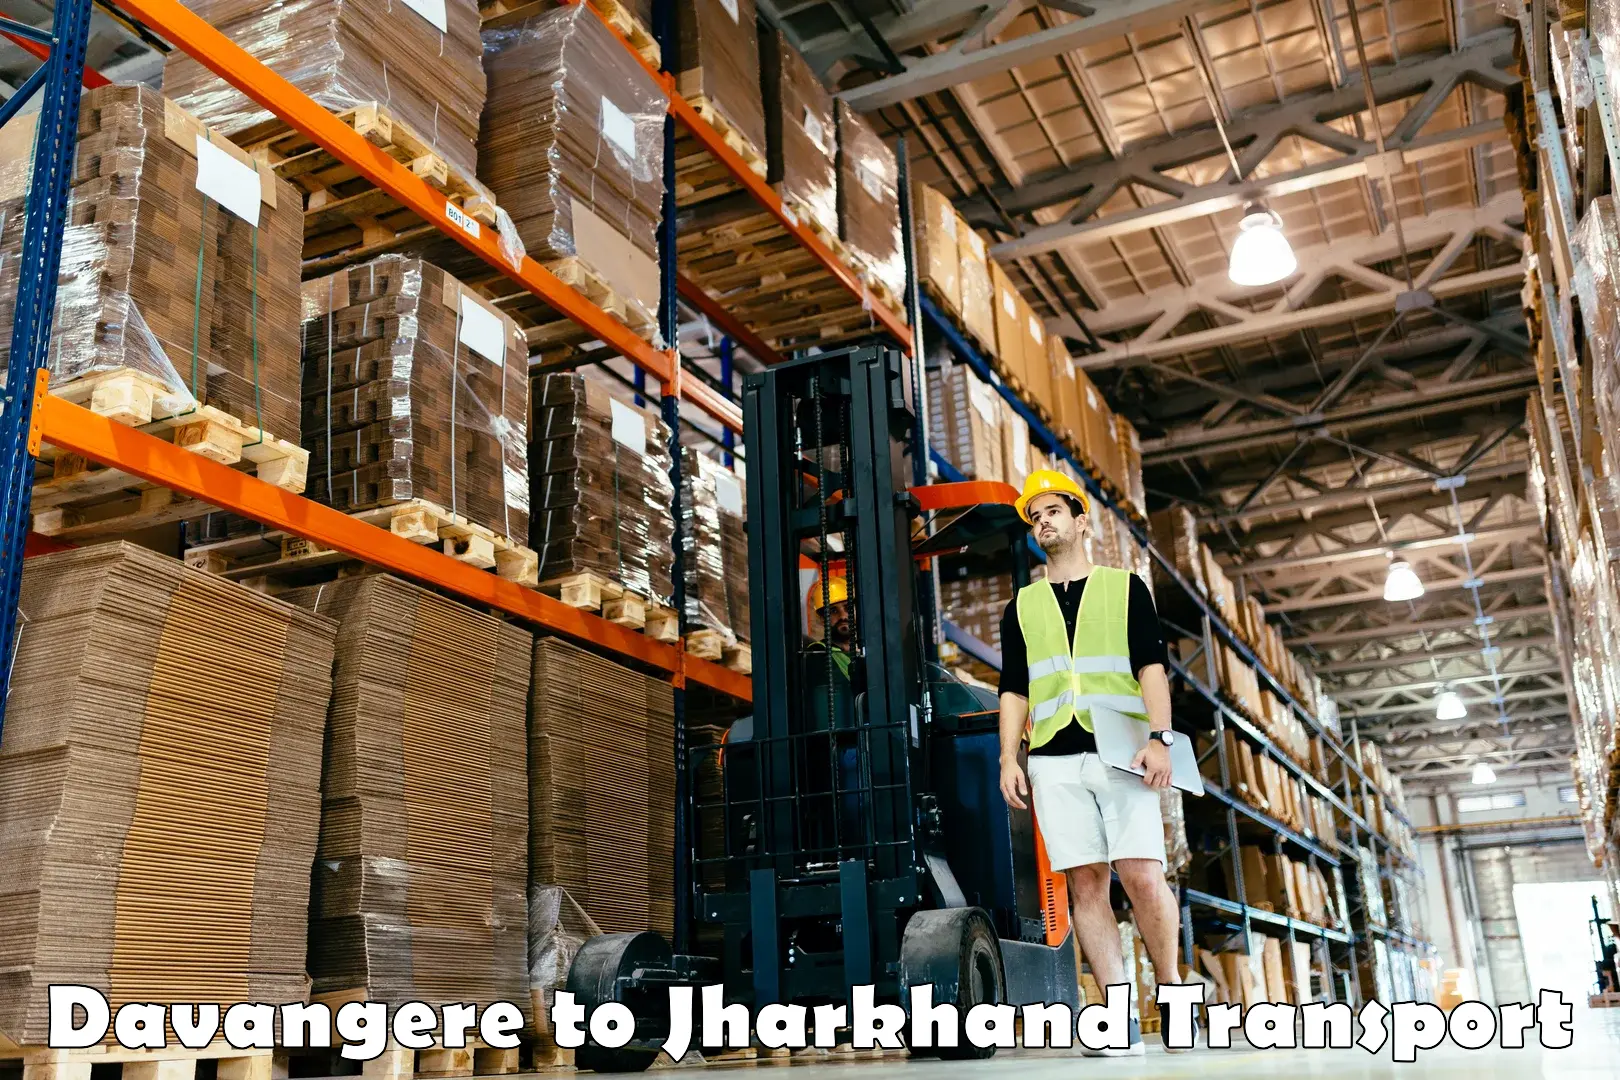 Shipping partner Davangere to Jharkhand